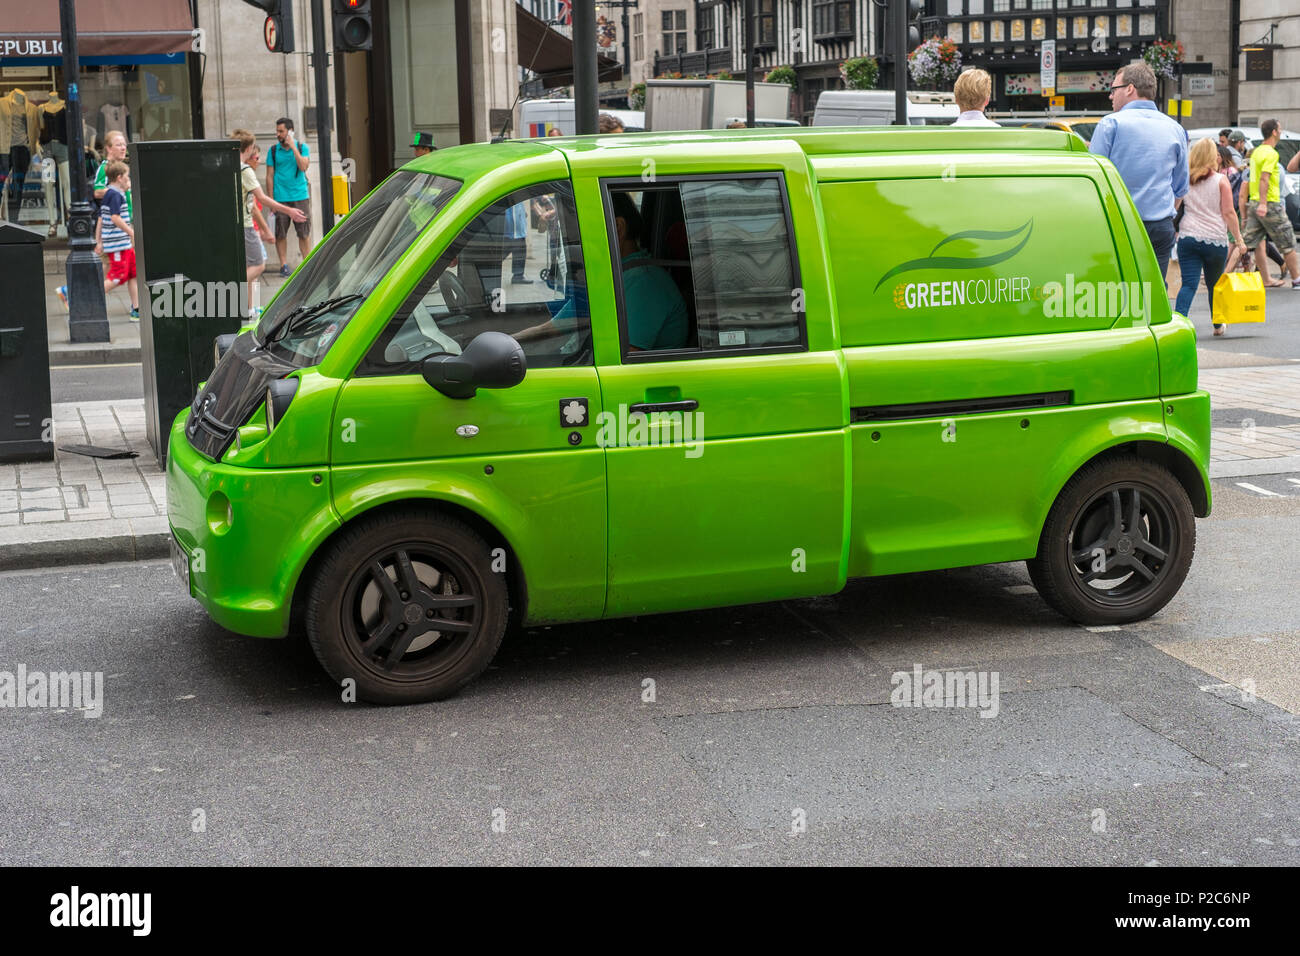 Green Courier Mia U pulmino elettrico a emissione zero a Regent Street, Londra, Inghilterra, Regno Unito. Foto Stock